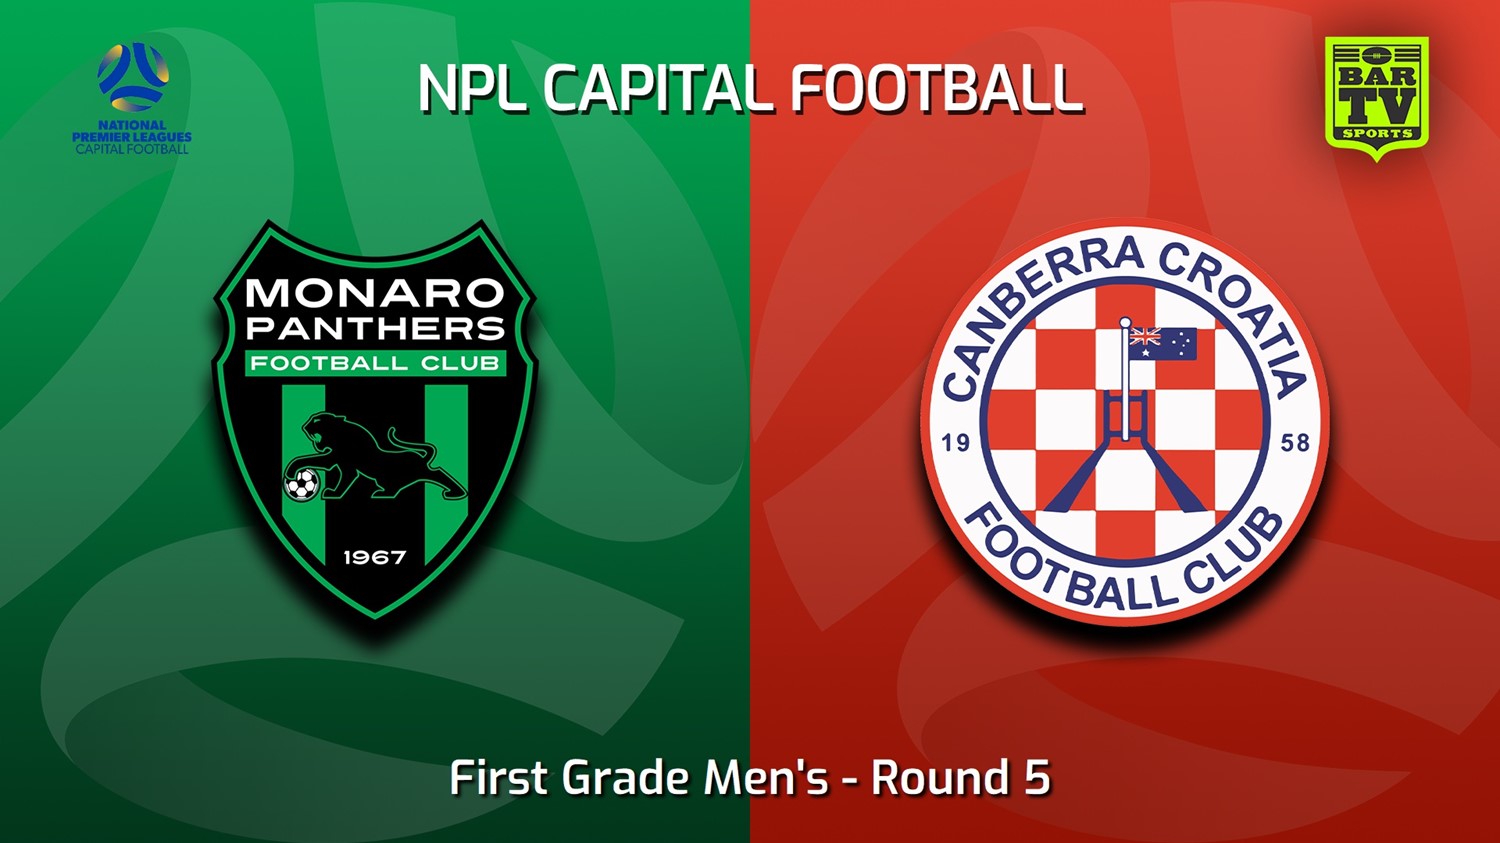 230506-Capital NPL Round 5 - Monaro Panthers v Canberra Croatia FC Minigame Slate Image